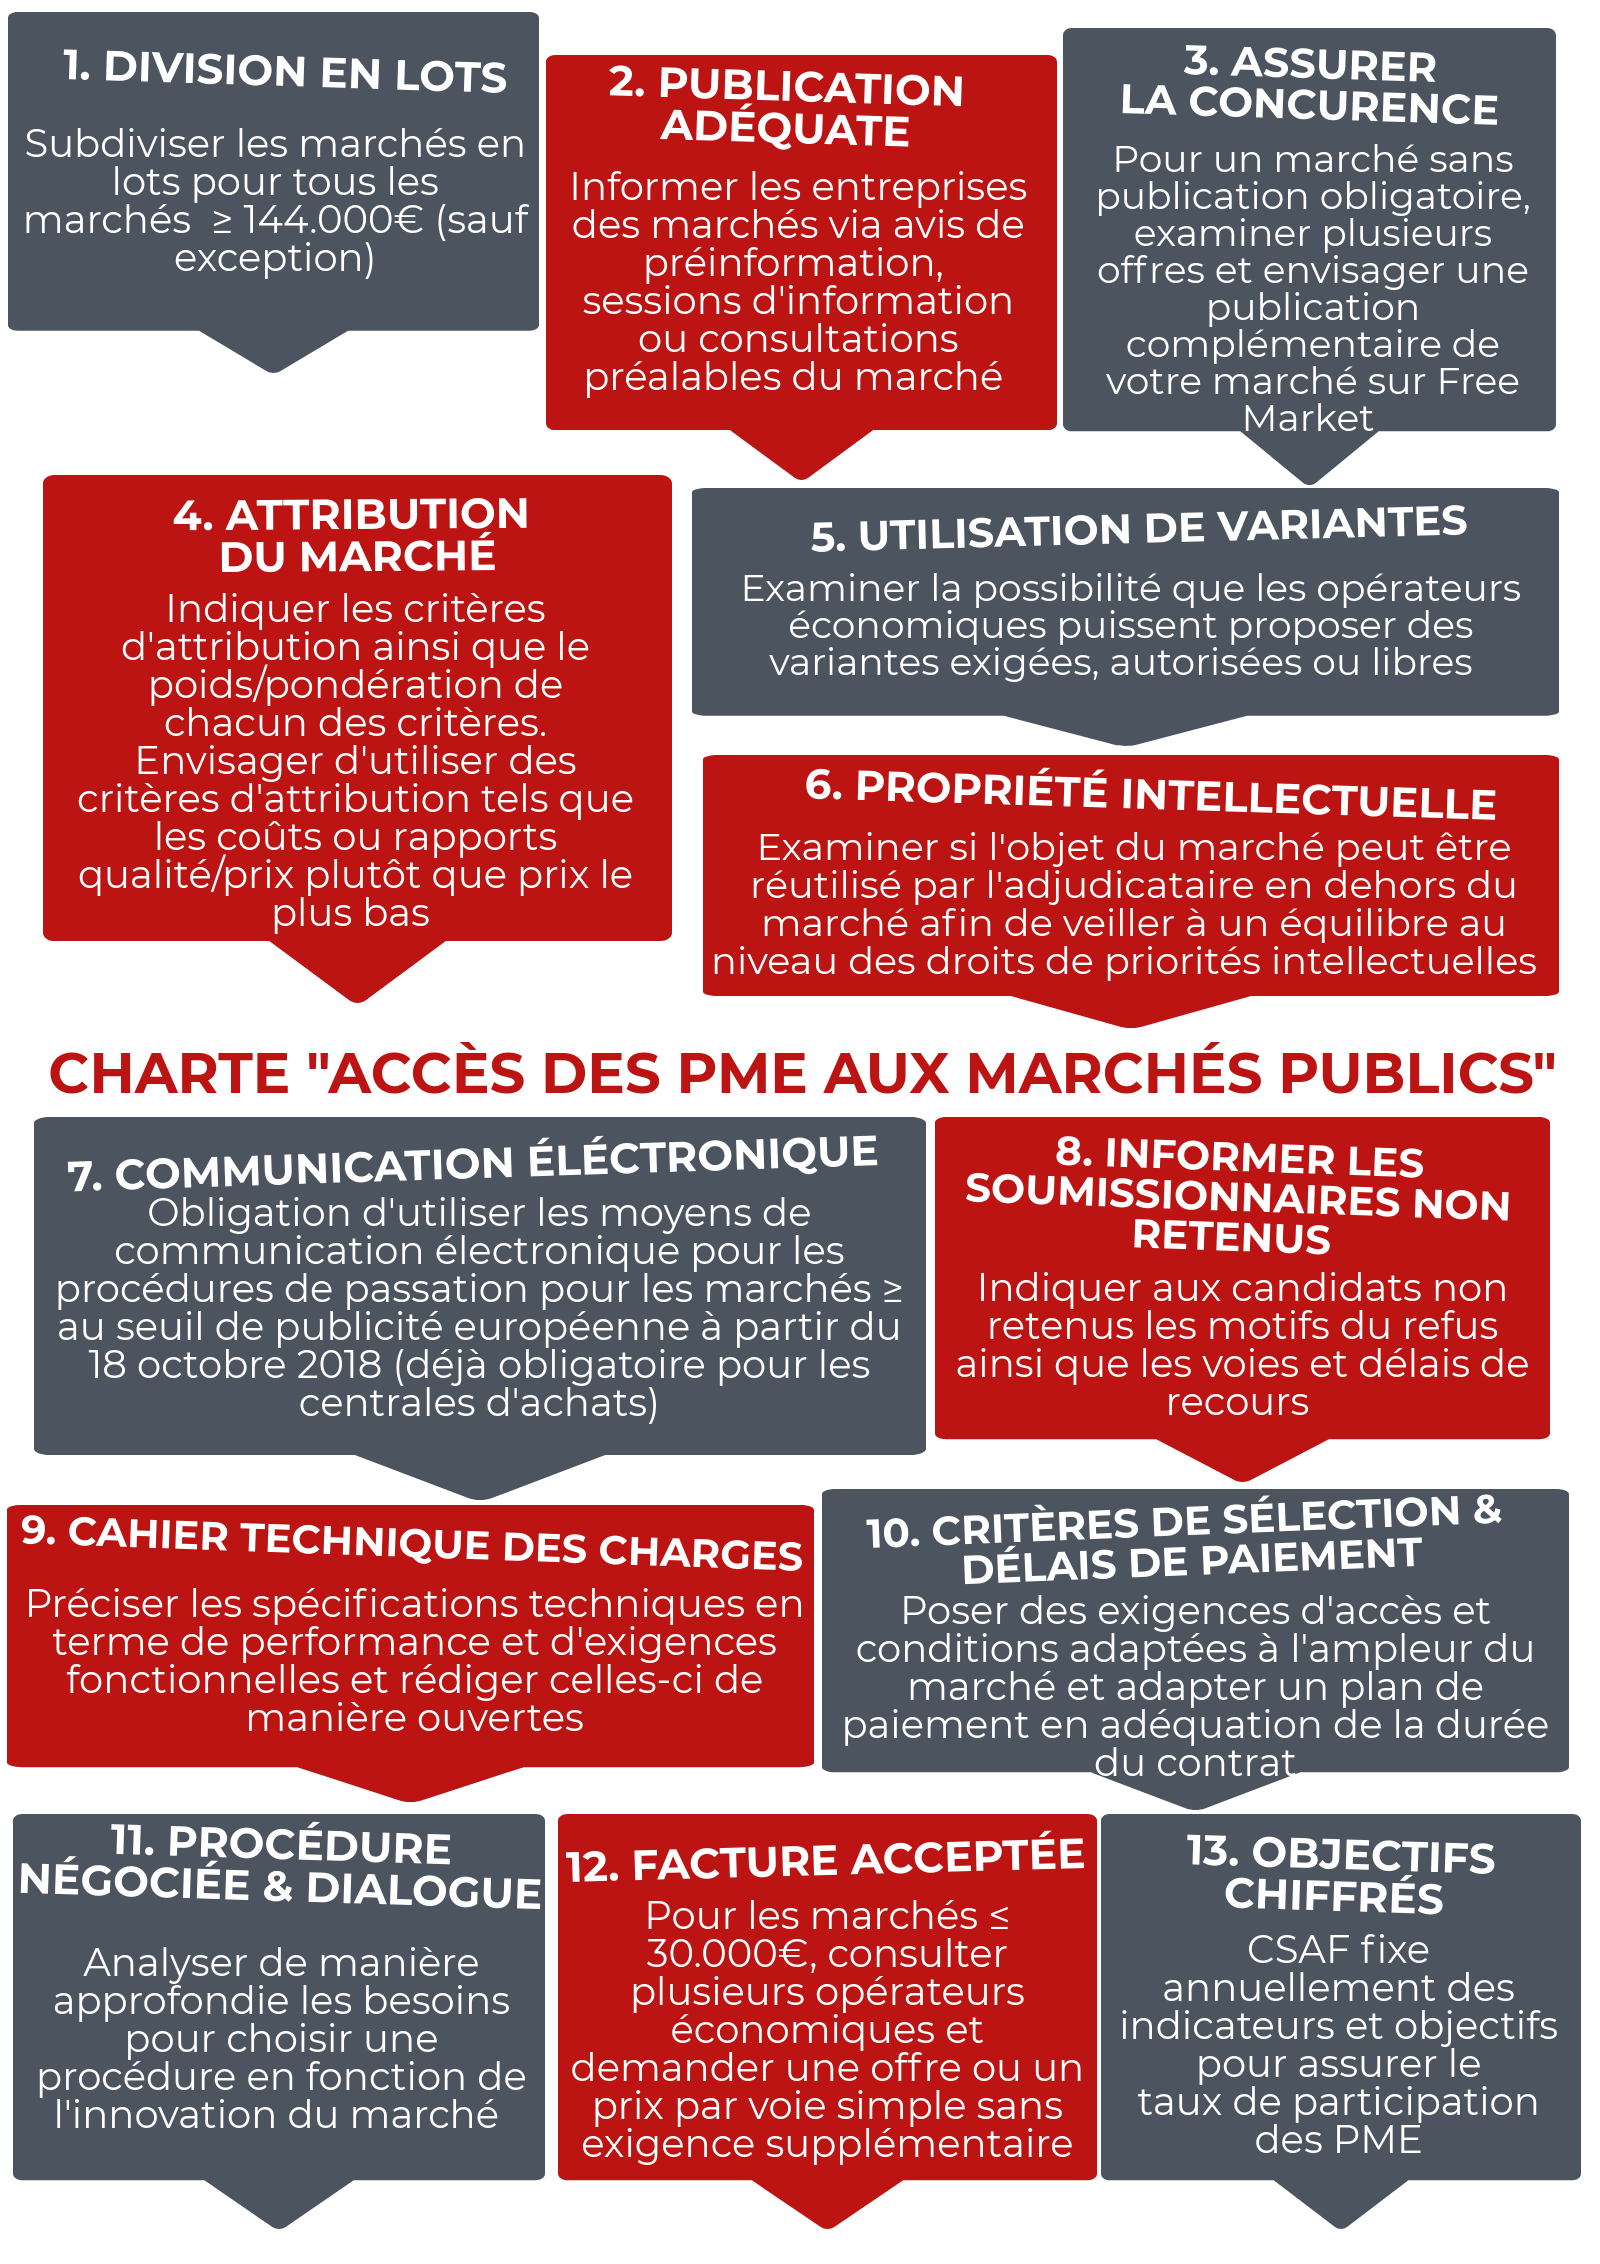 Charte Accès PME aux Marchés Publics